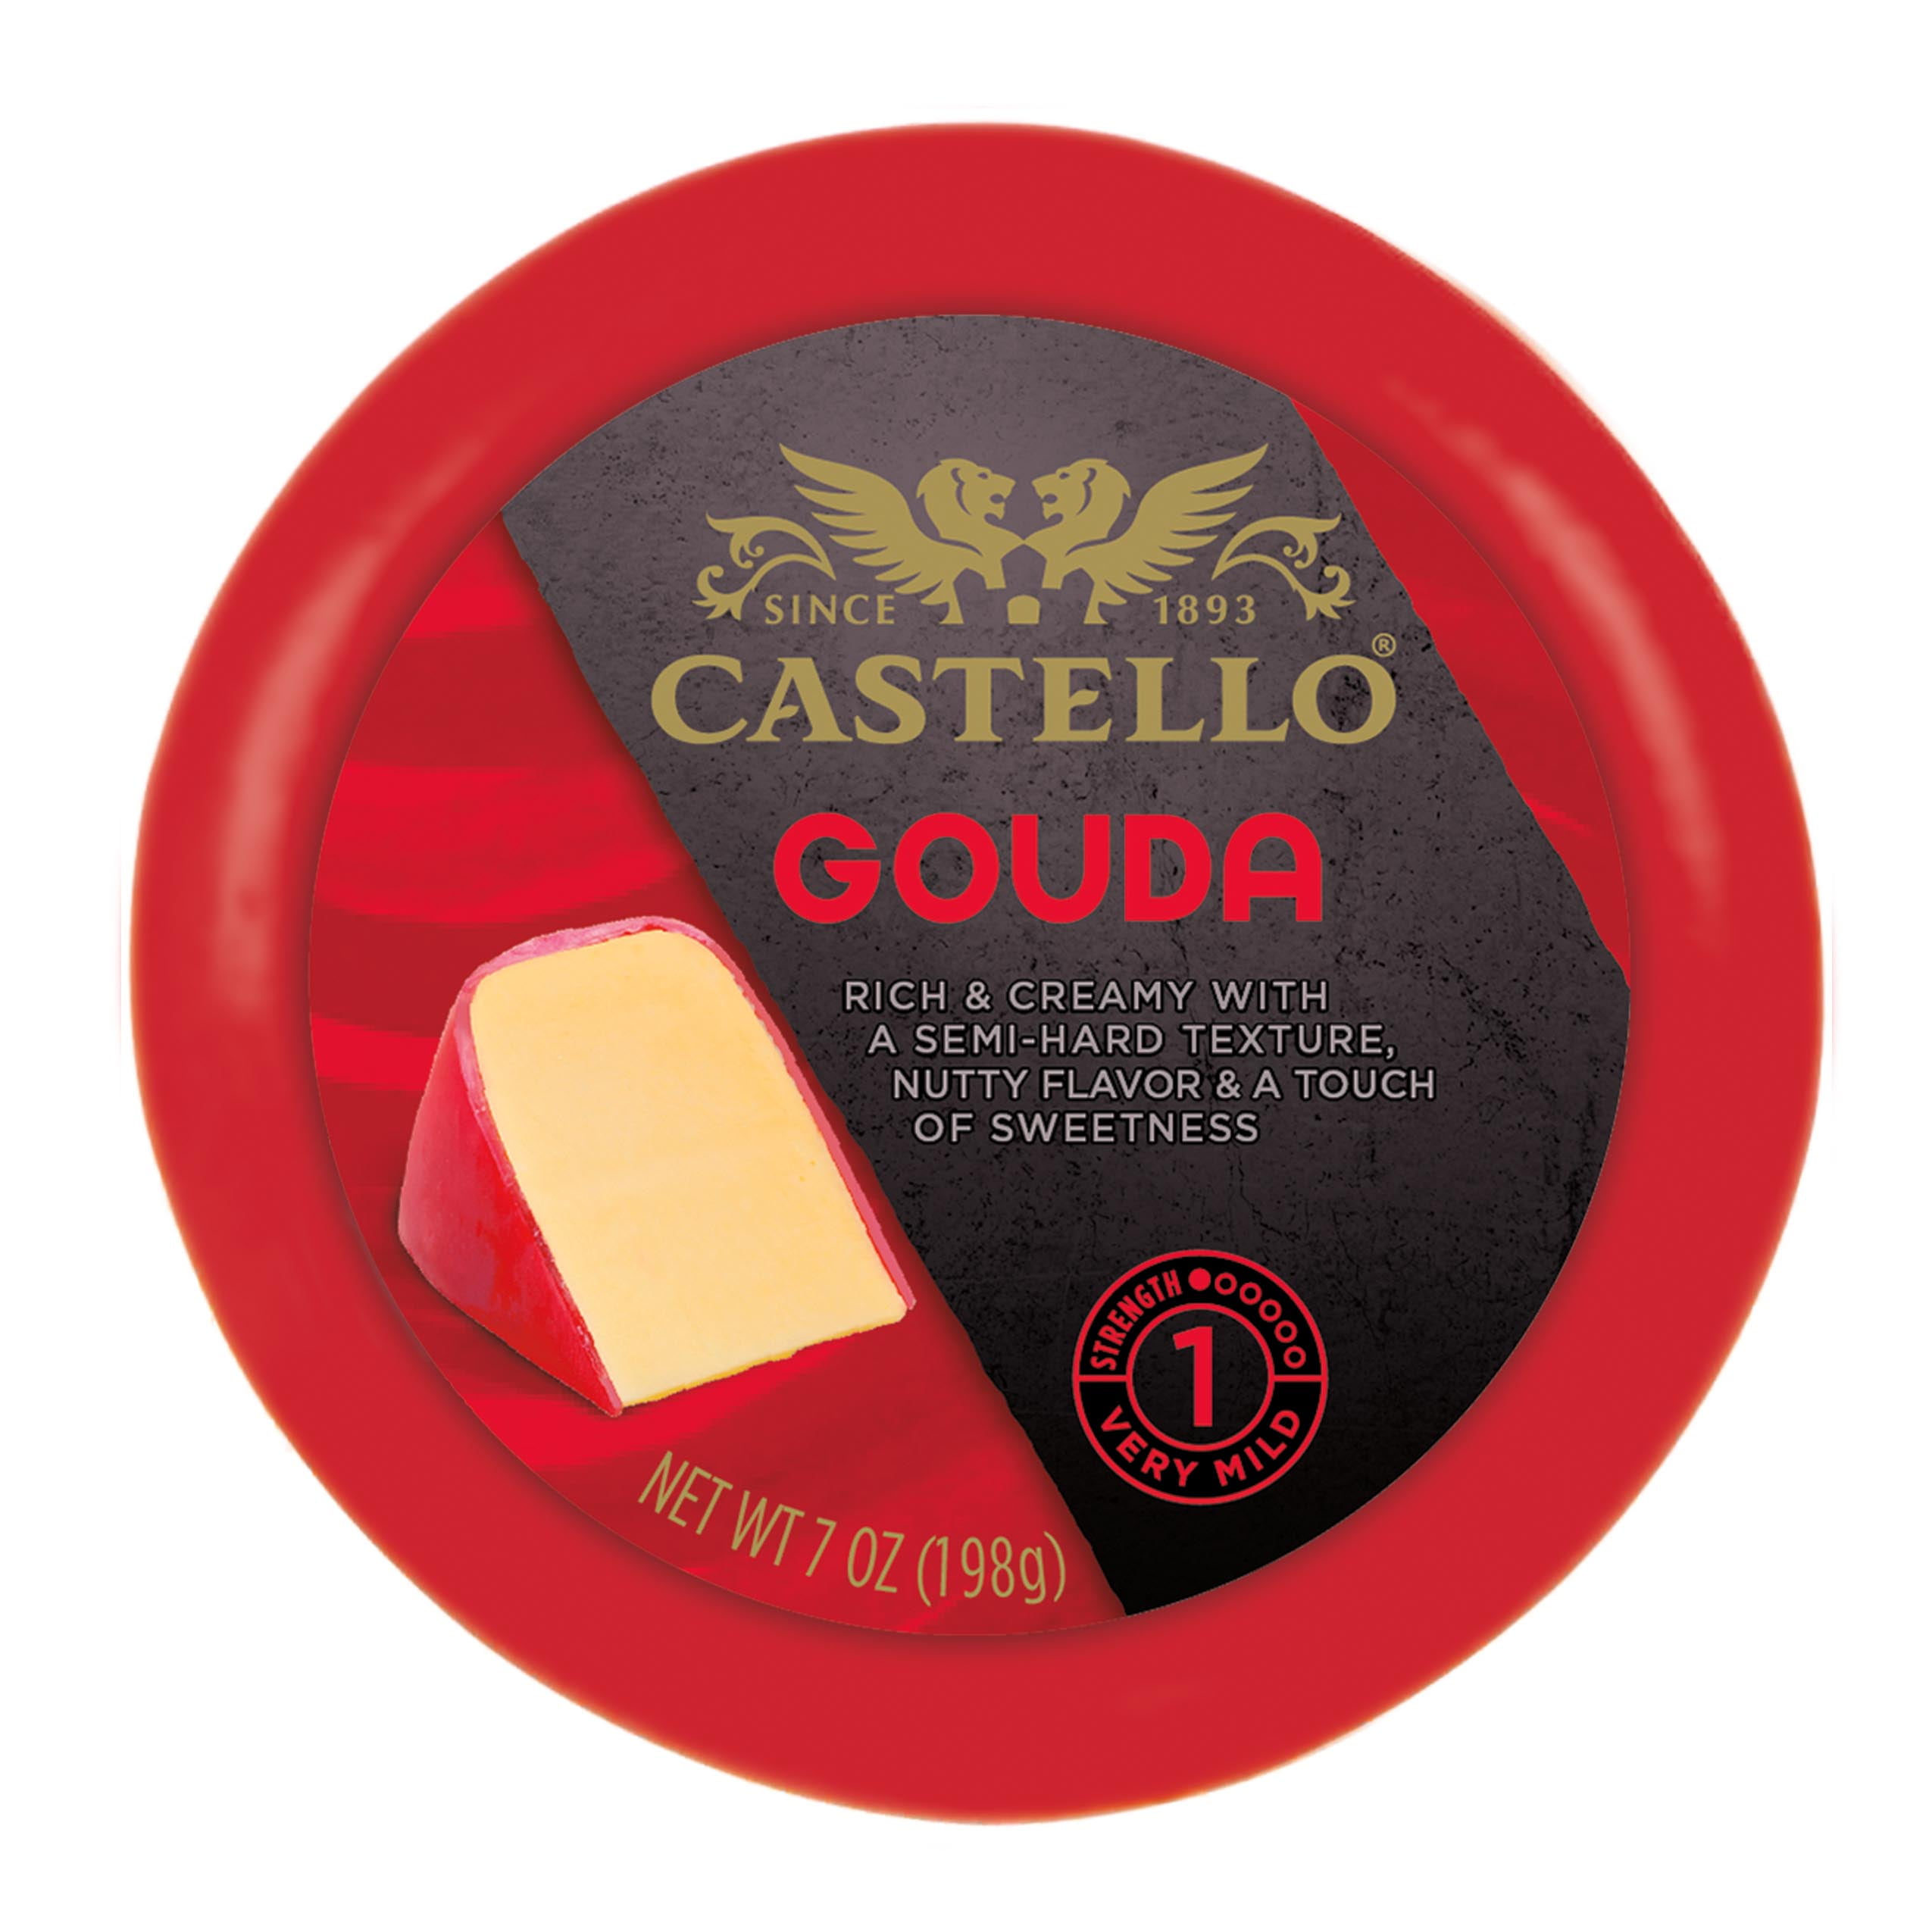 Castello Gourmet Gouda Cheese, Wax Round, 7 oz 